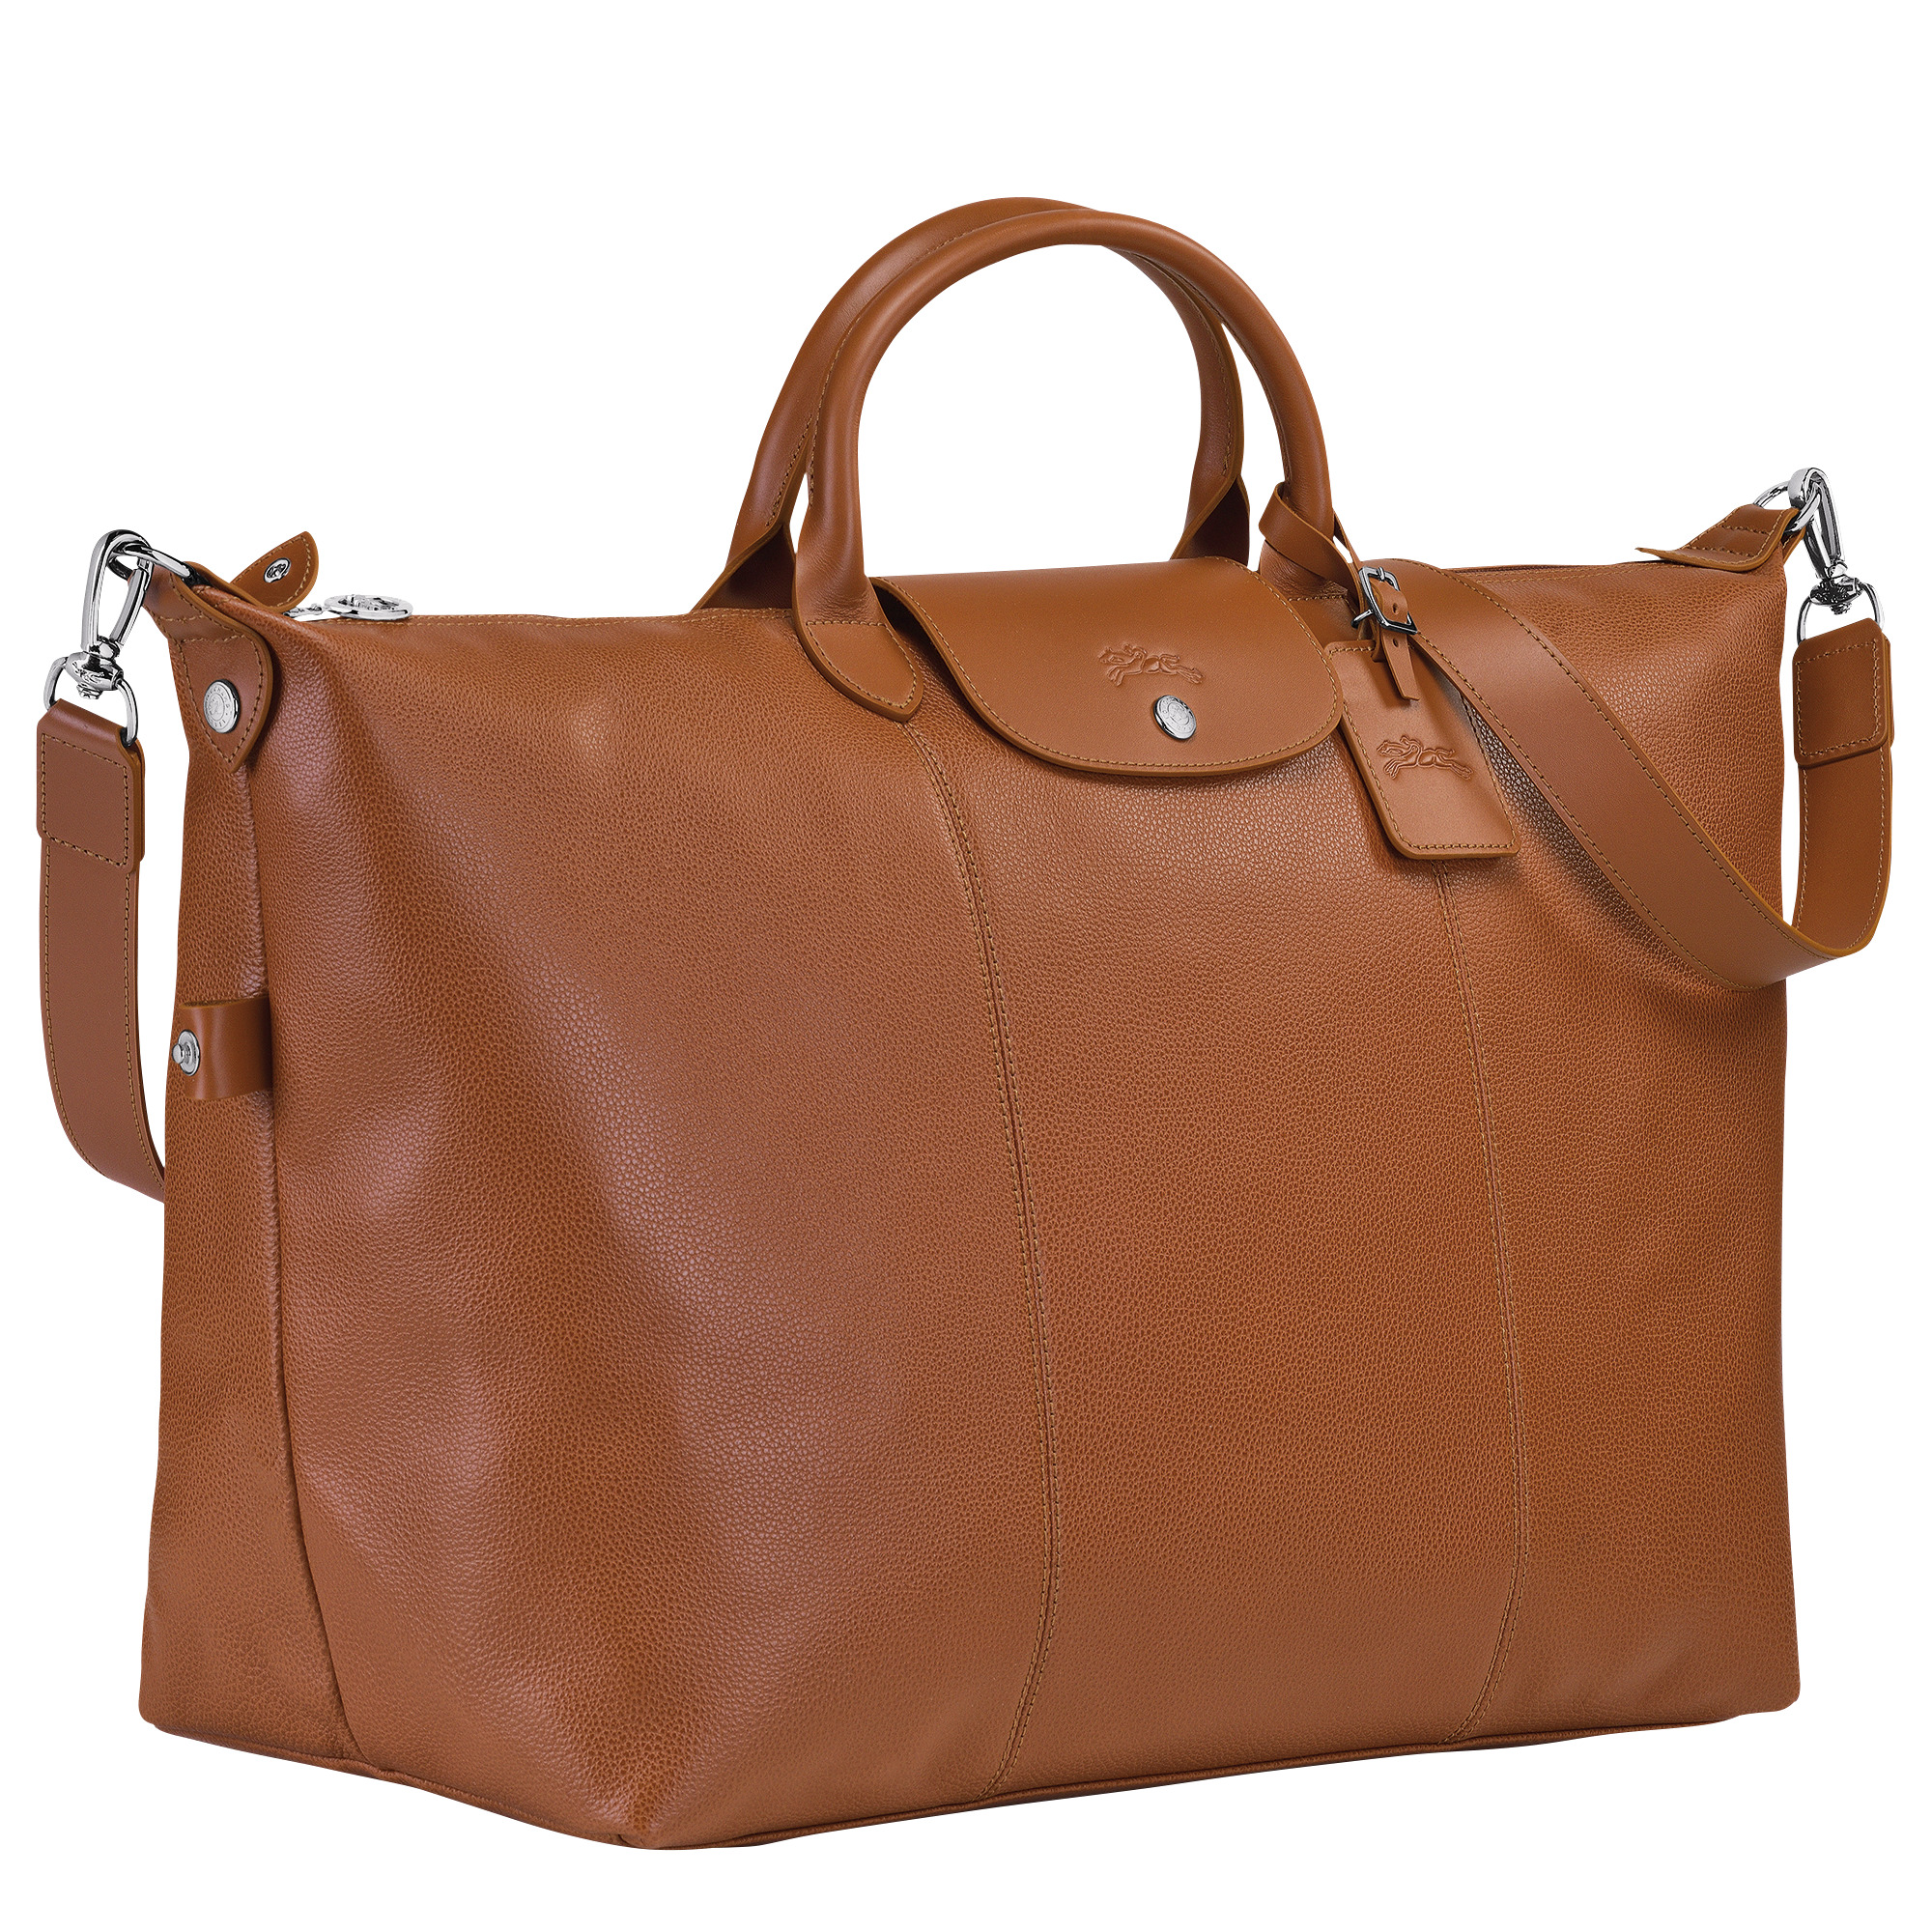 Le Foulonné S Travel bag Caramel - Leather - 3